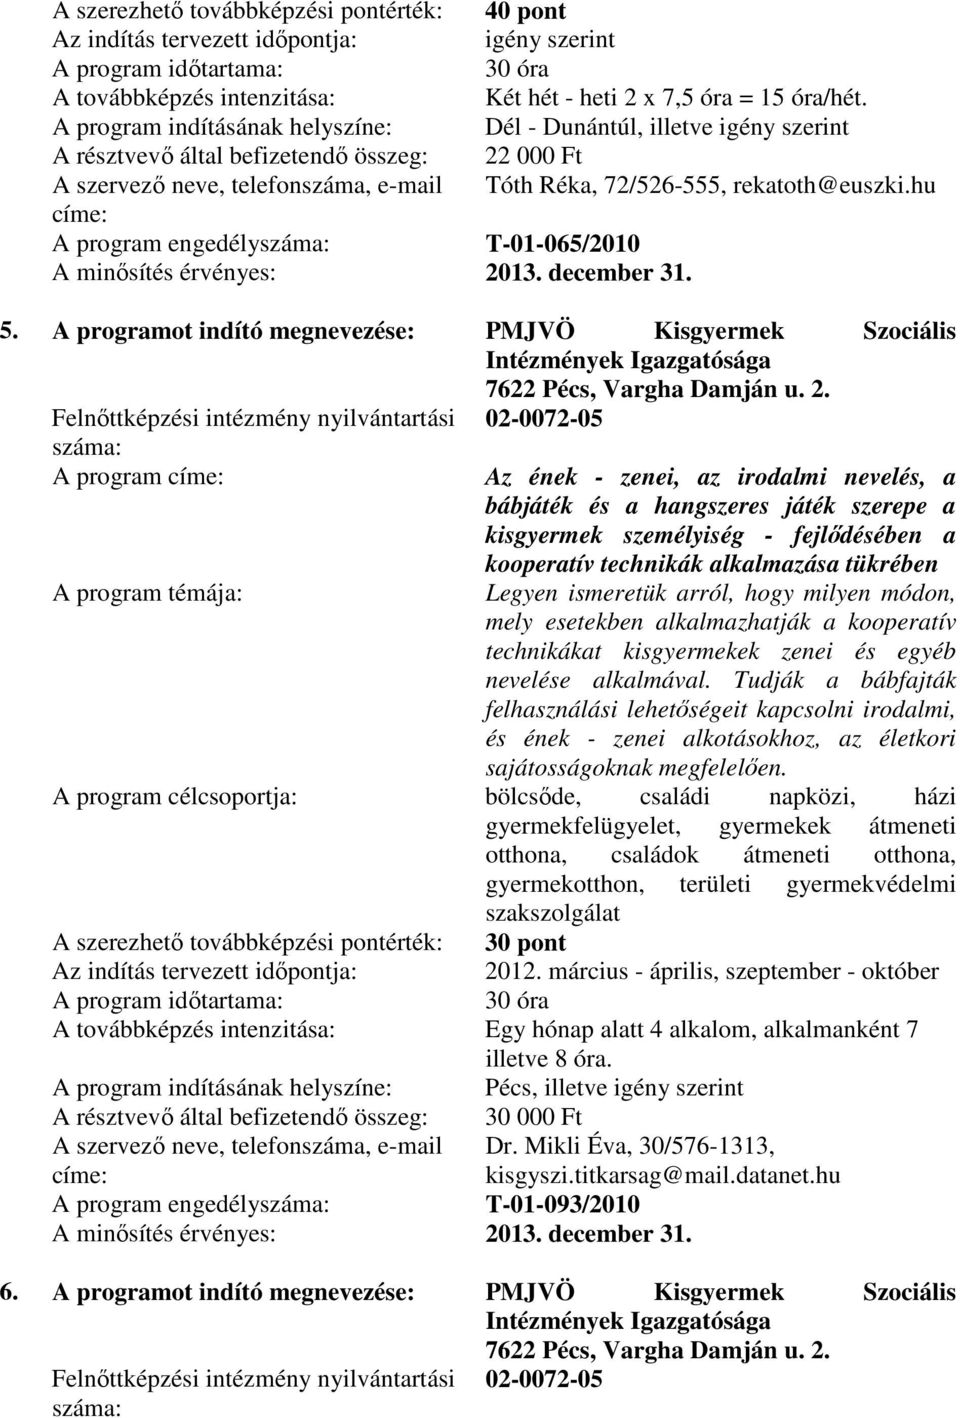 A programot indító megnevezése: PMJVÖ Kisgyermek Szociális Intézmények Igazgatósága 7622 Pécs, Vargha Damján u. 2.